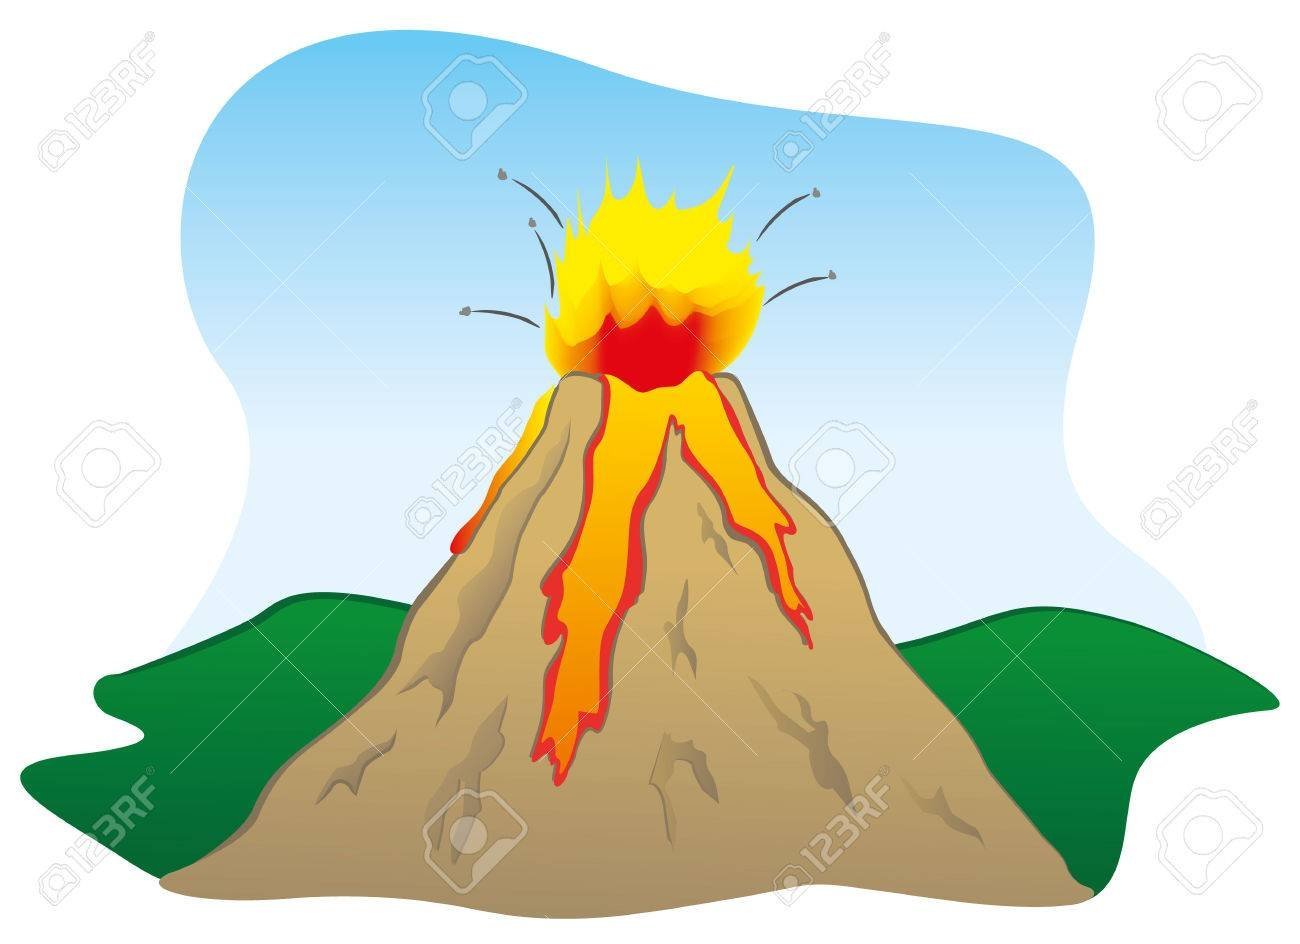 Извержение вулкана рисунок поэтапно фото